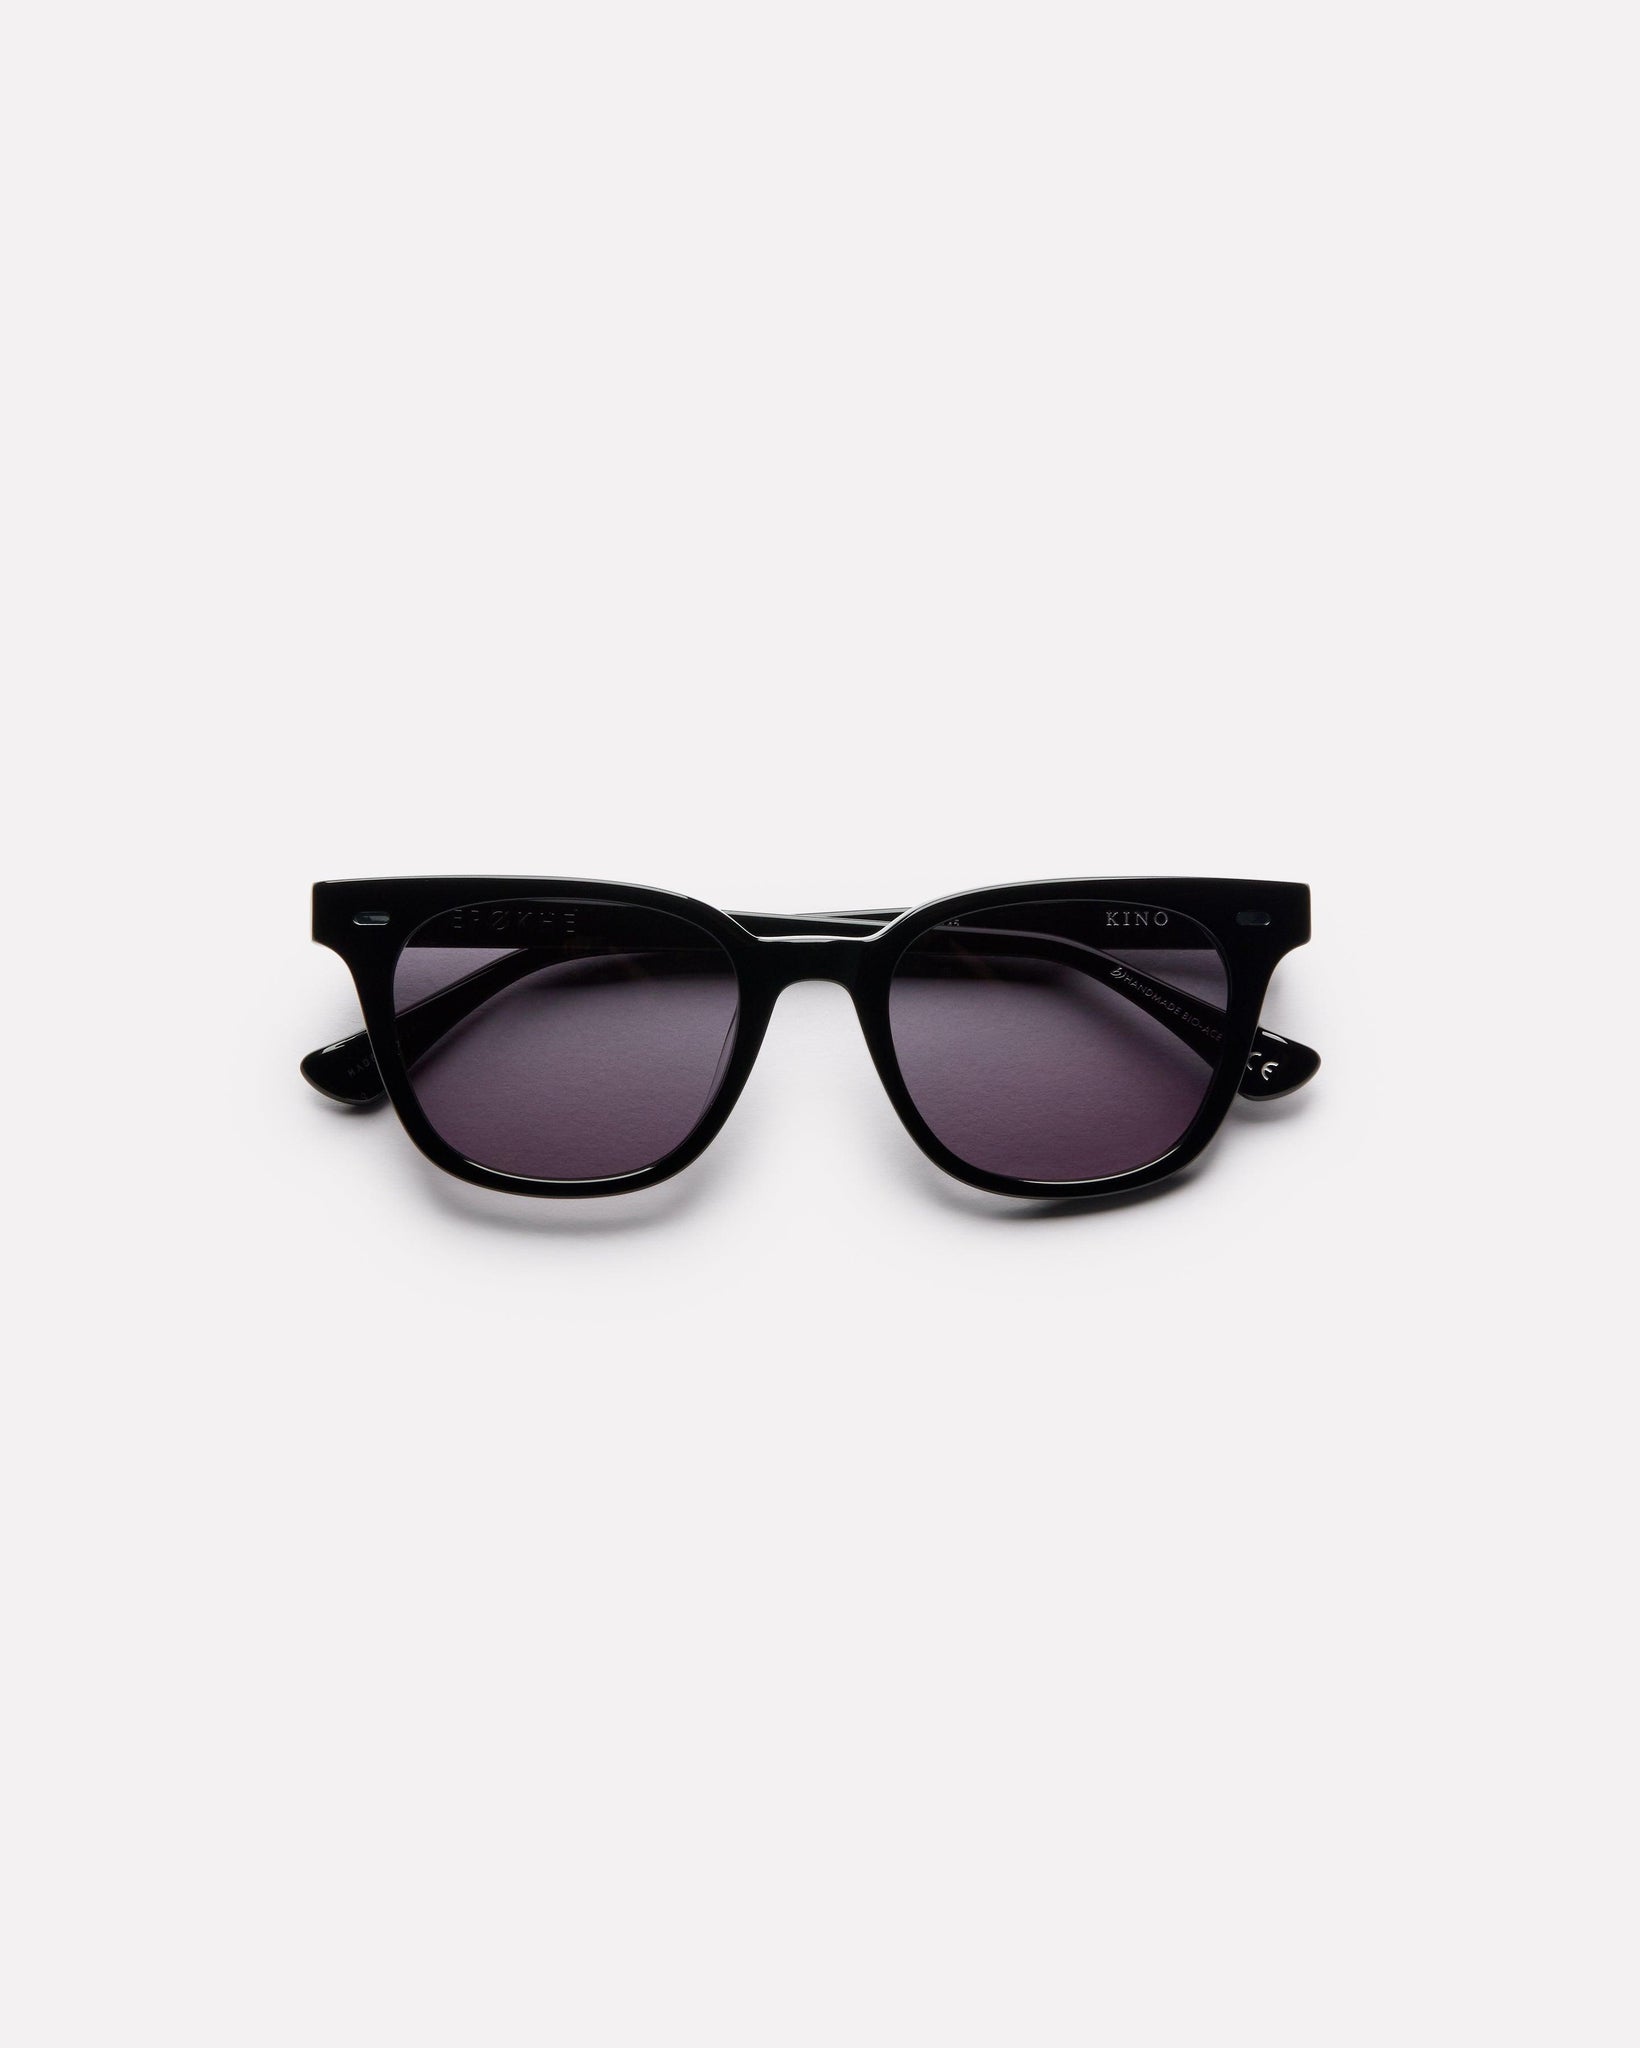 Kino - Black Polished / Black - Sunglasses - EPOKHE EYEWEAR